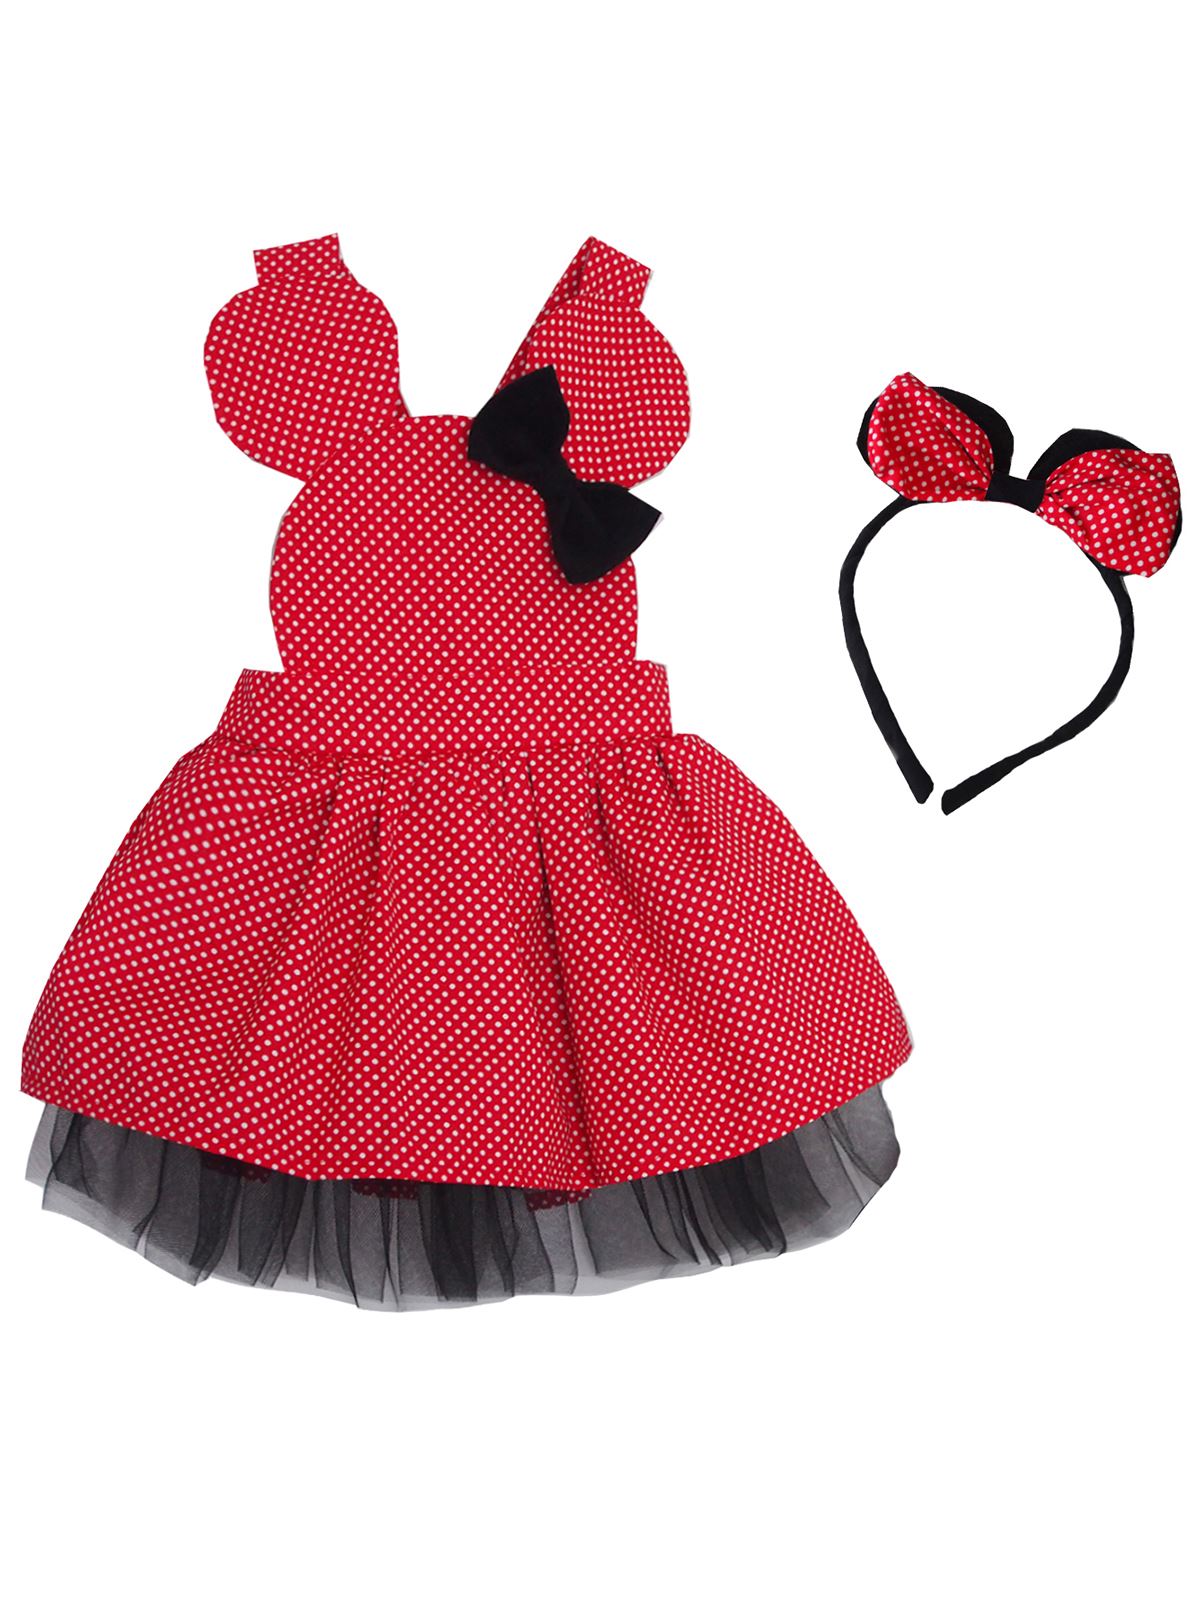 Shecco Babba Kız Çocuk Elbise Kırmızı Puantiyeli - Tütü Elbise Taç Takım 5-8 Yaş